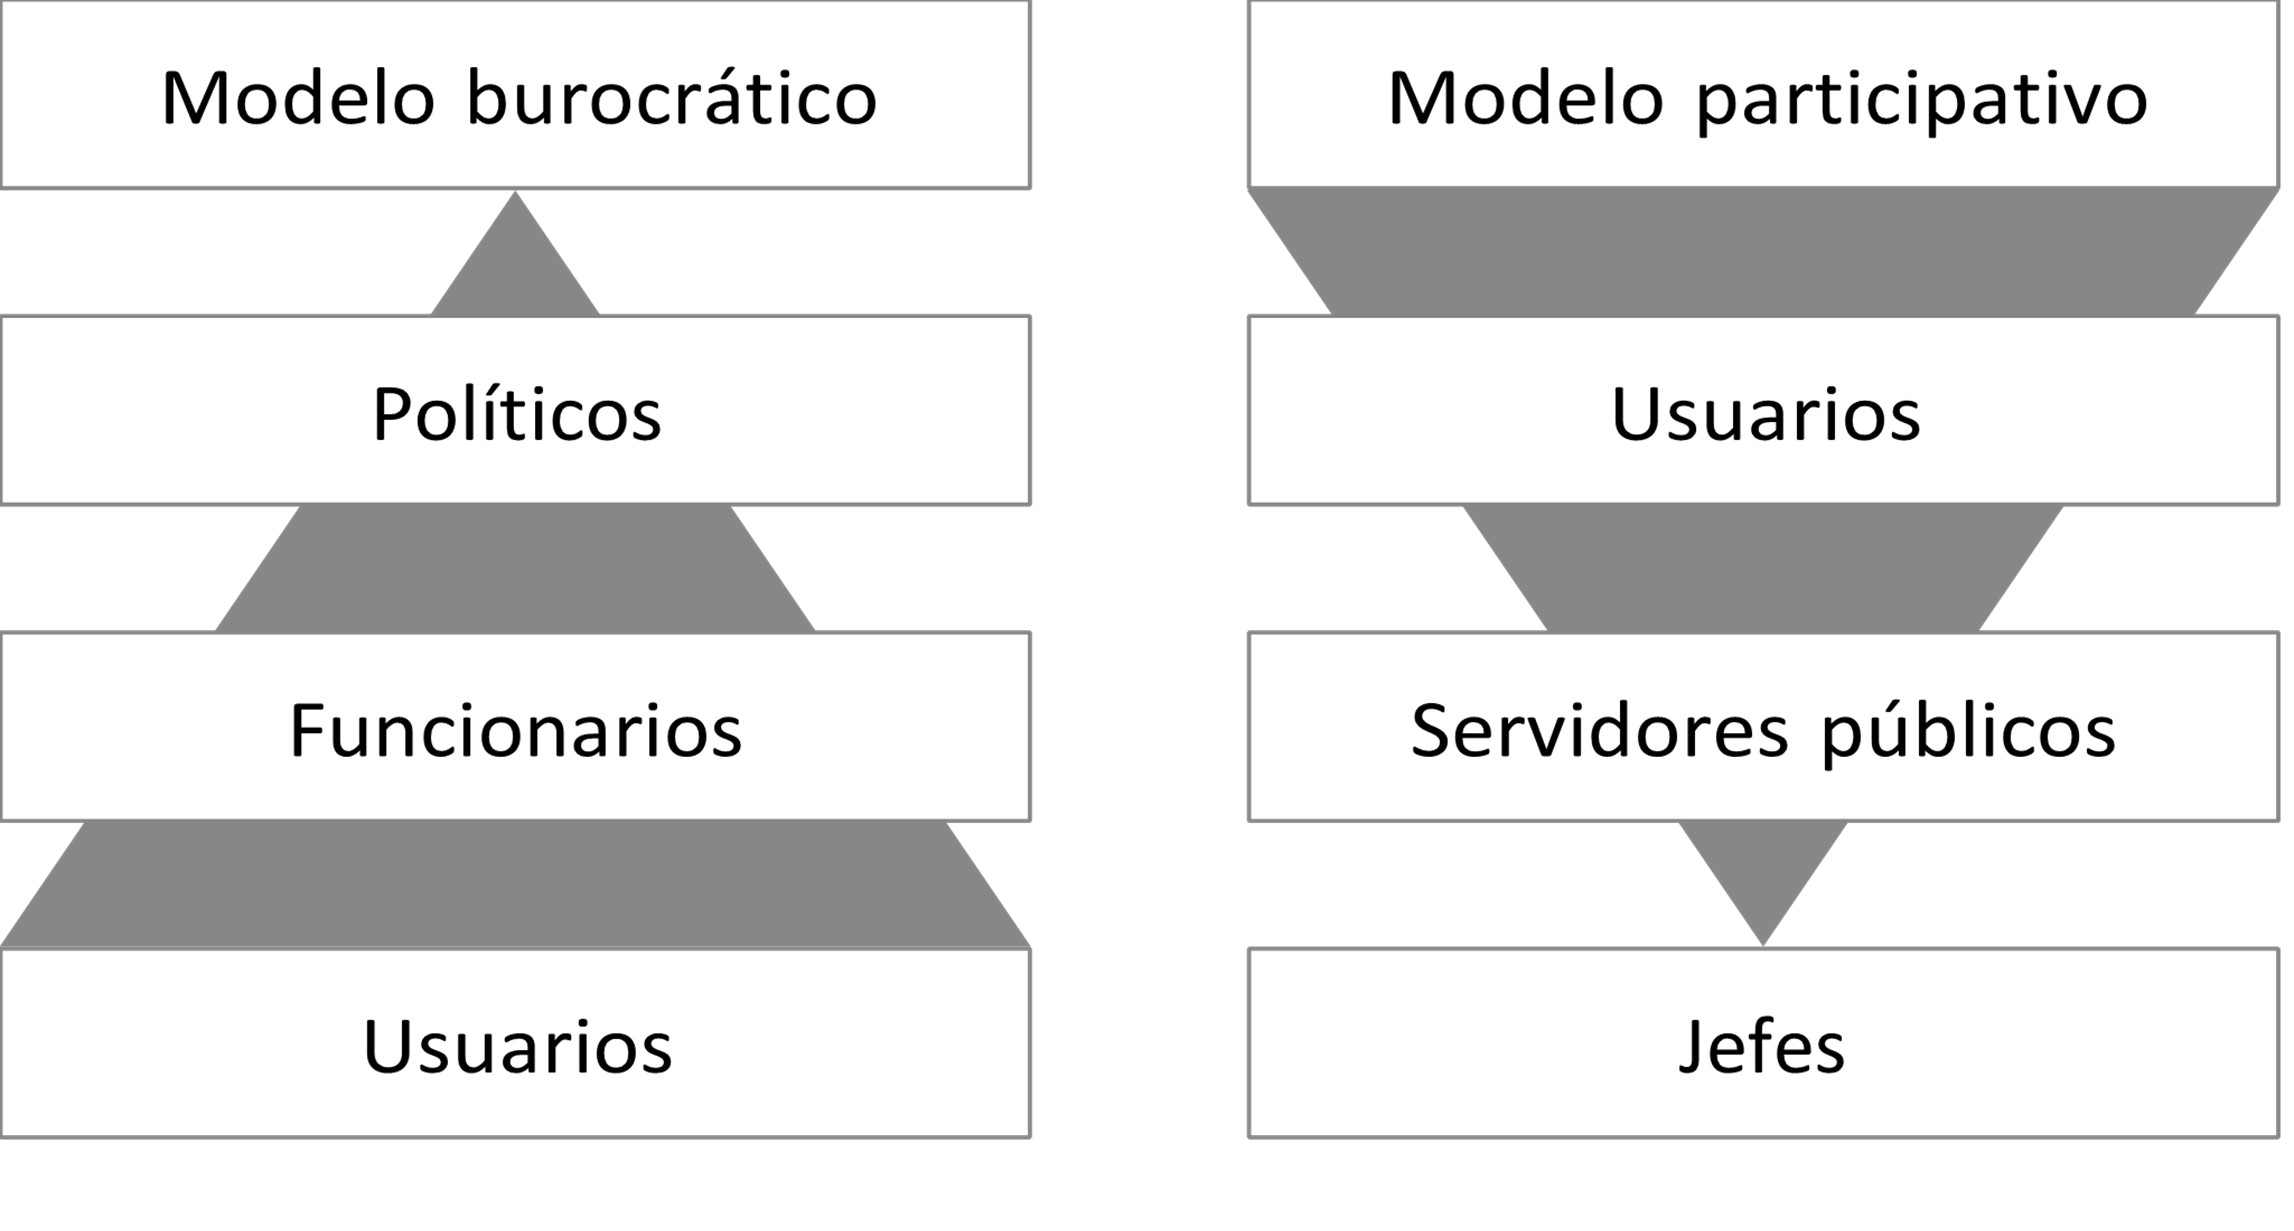 Comparación de modelos de Estado: burocrático vs. participativo